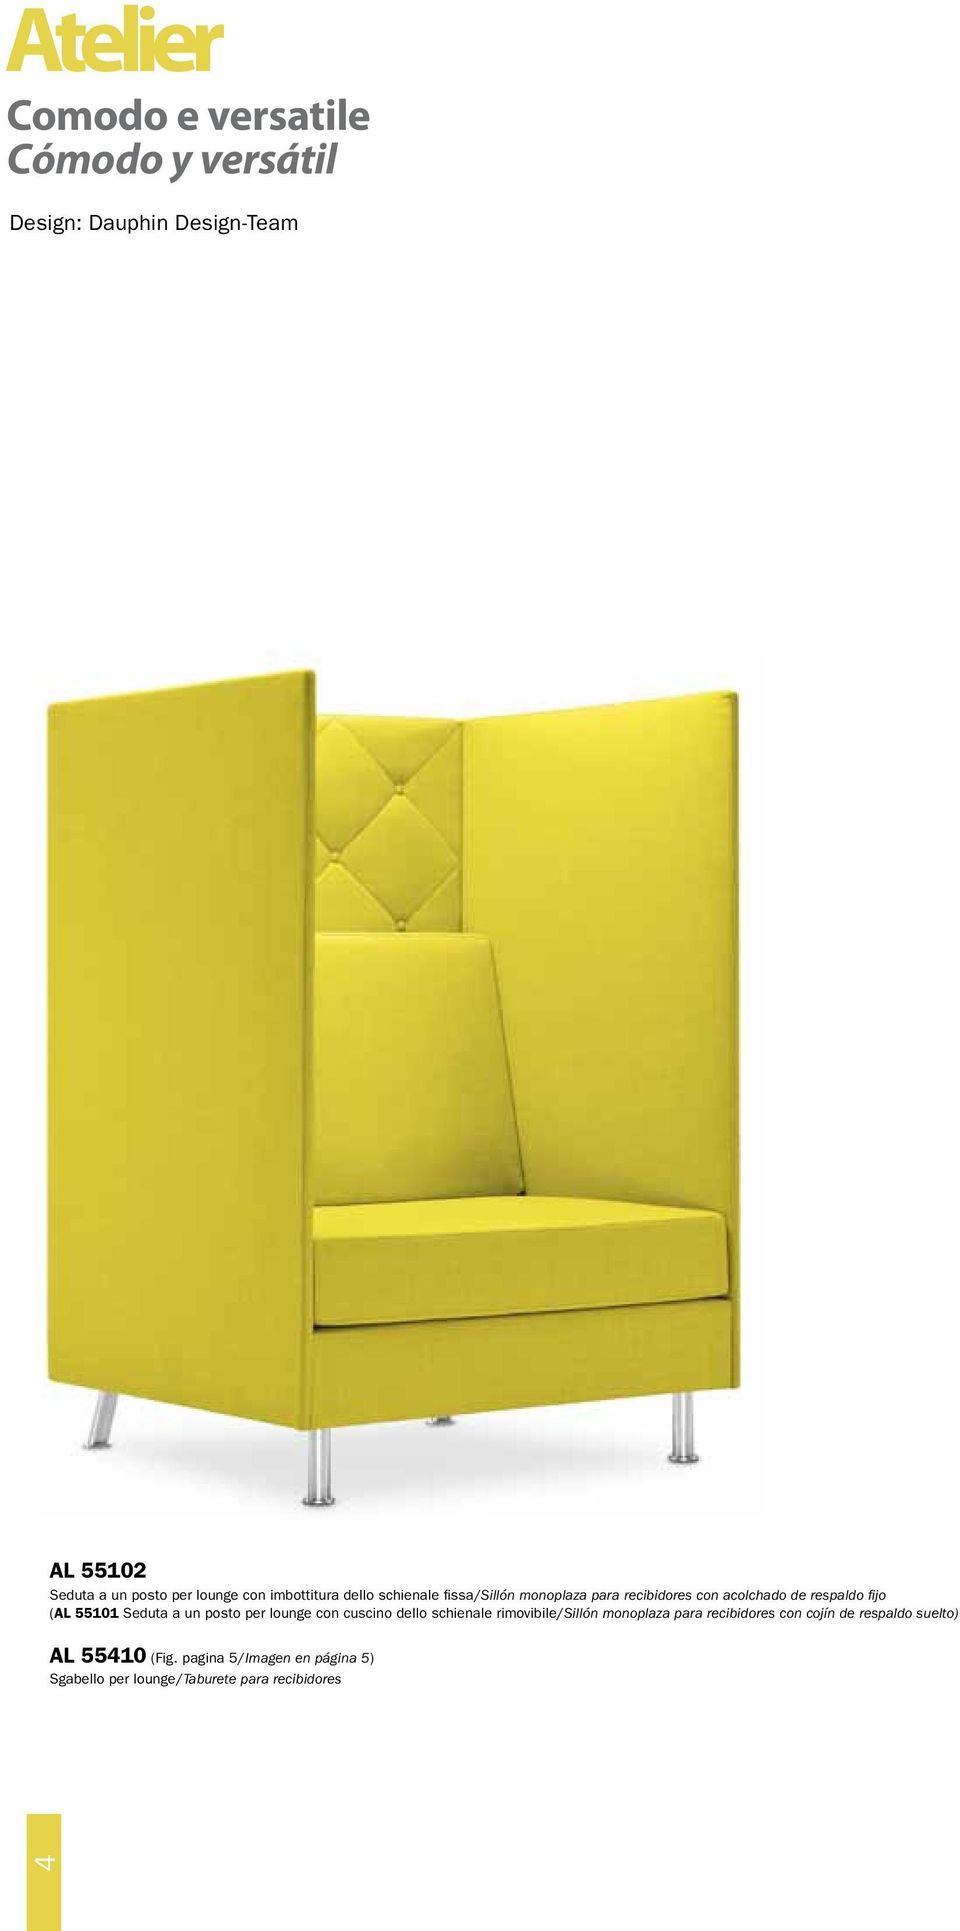 55101 Seduta a un posto per lounge con cuscino dello schienale rimovibile/sillón monoplaza para recibidores con